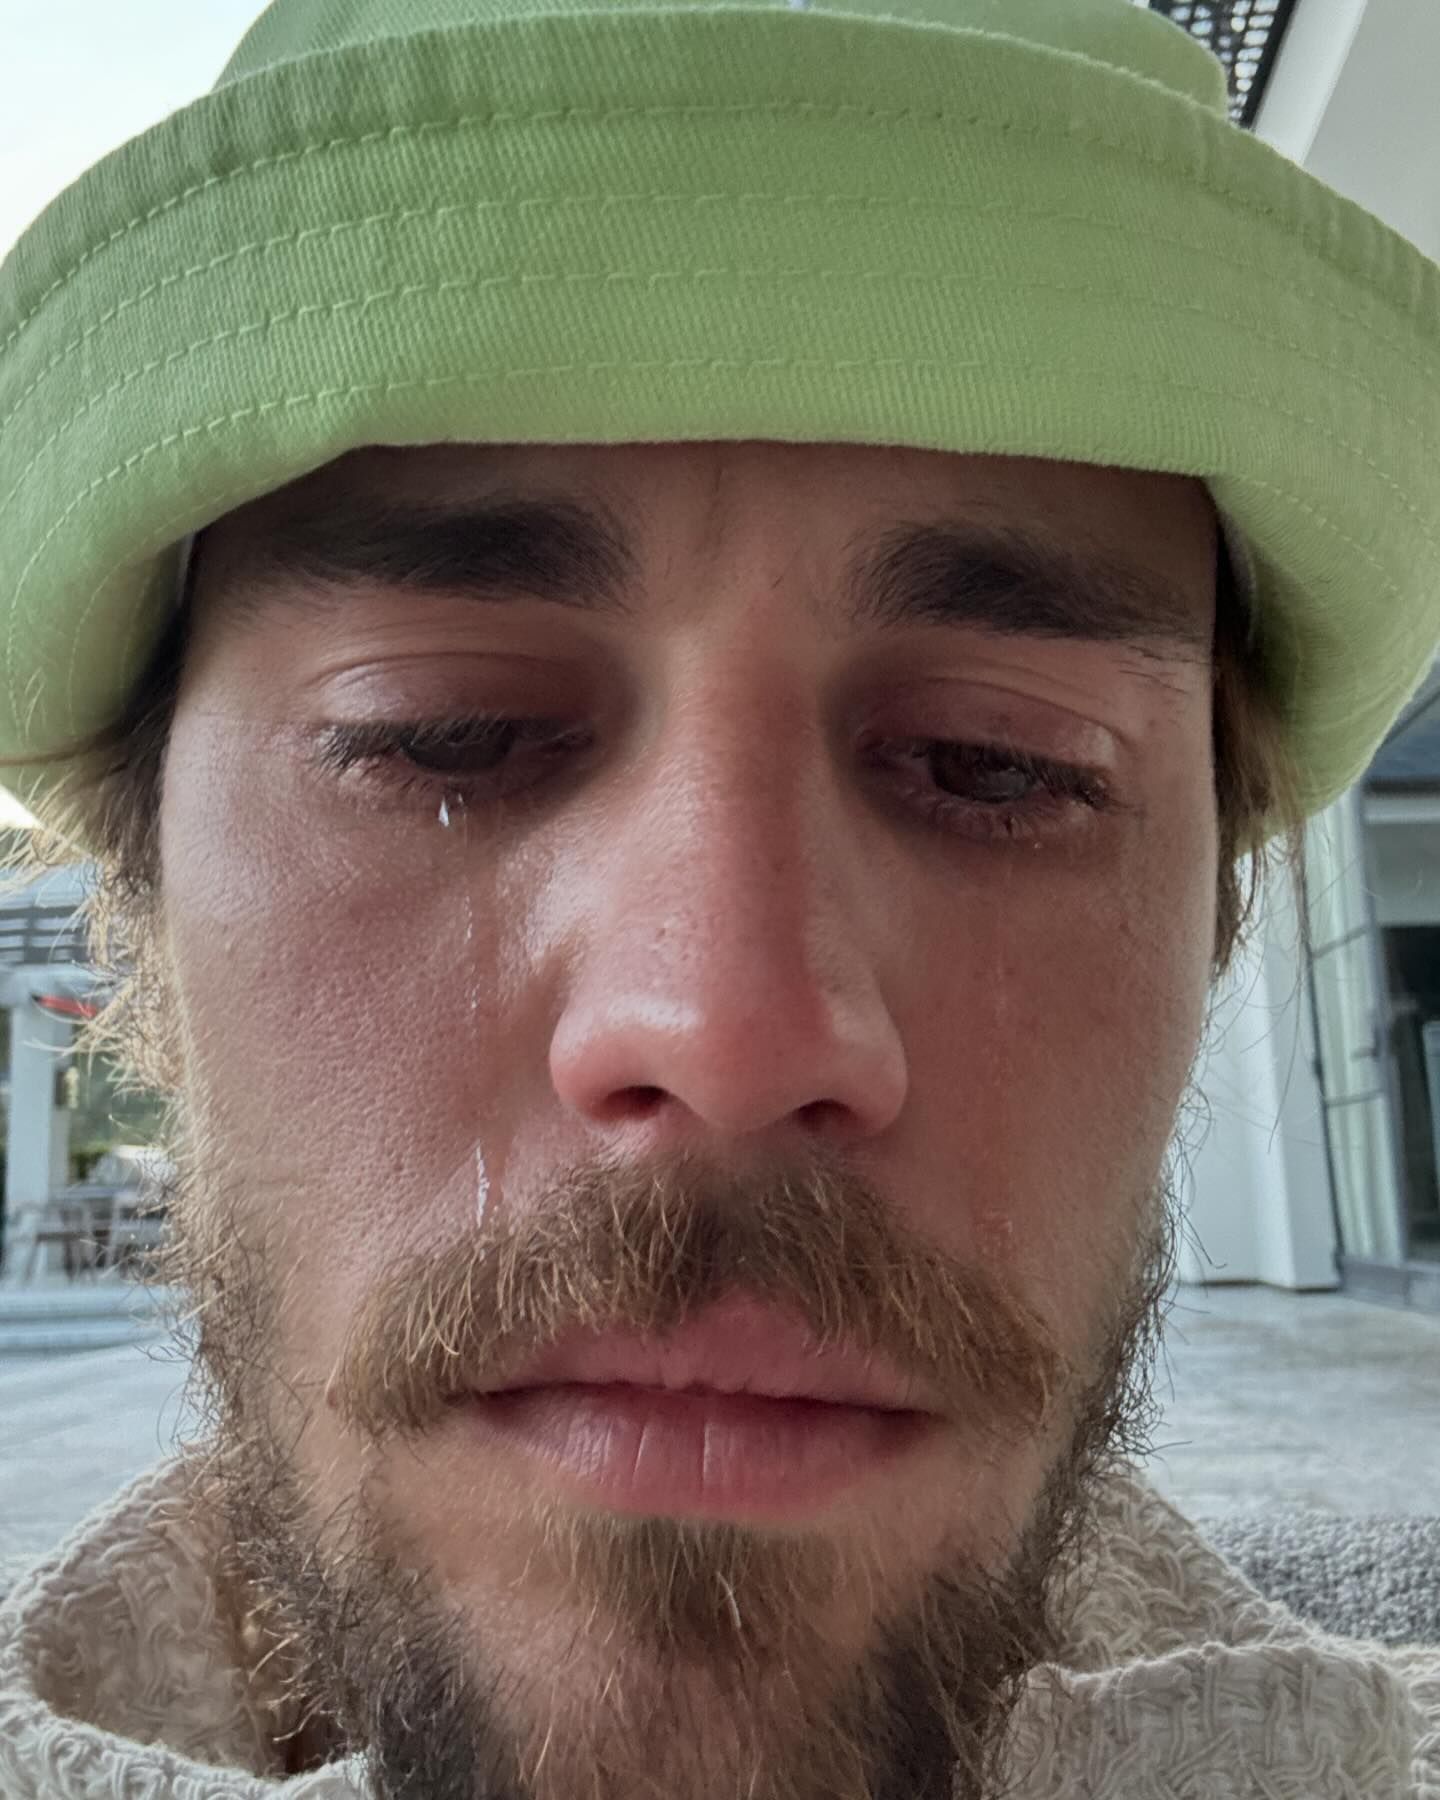 Justin concerned fans after uploading a selfie of him crying